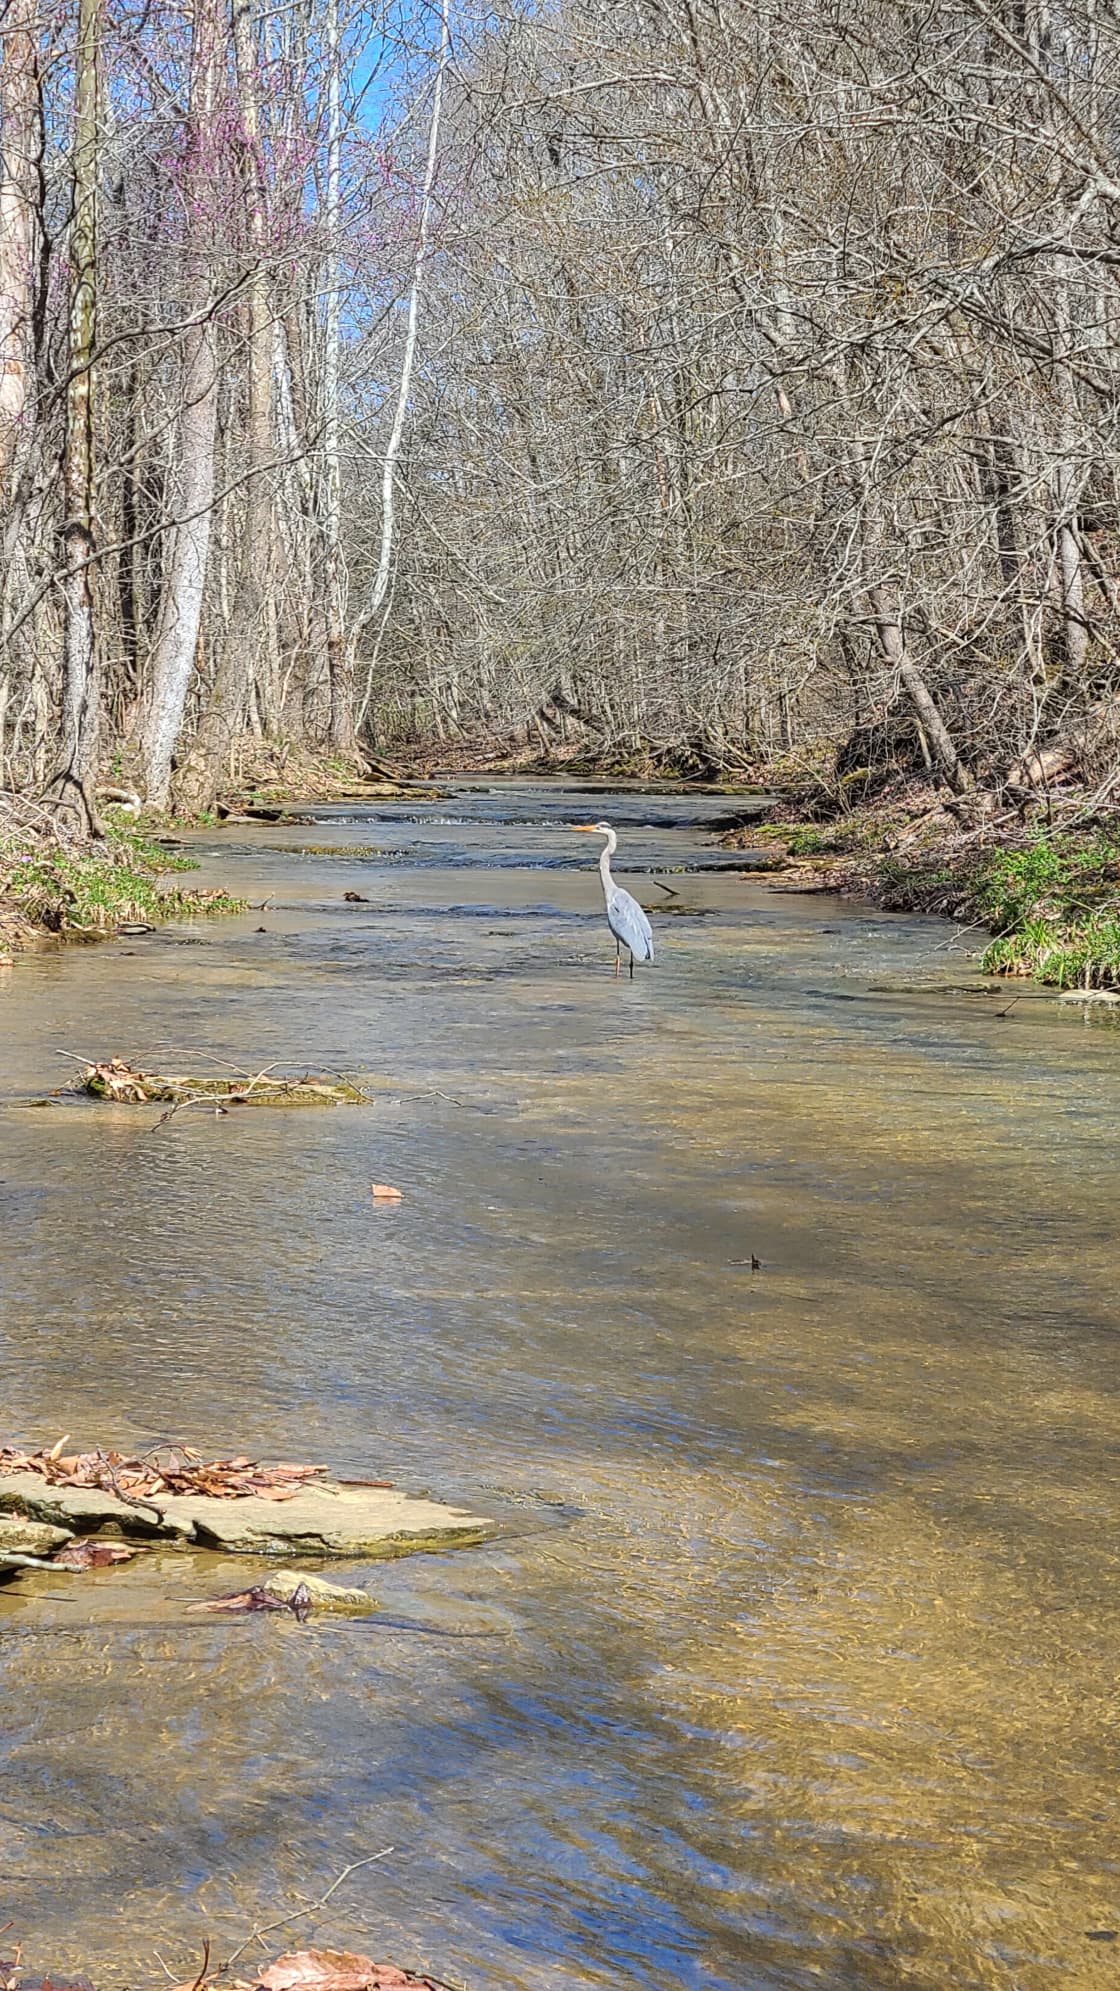 Heron on the Flat Rock Creek